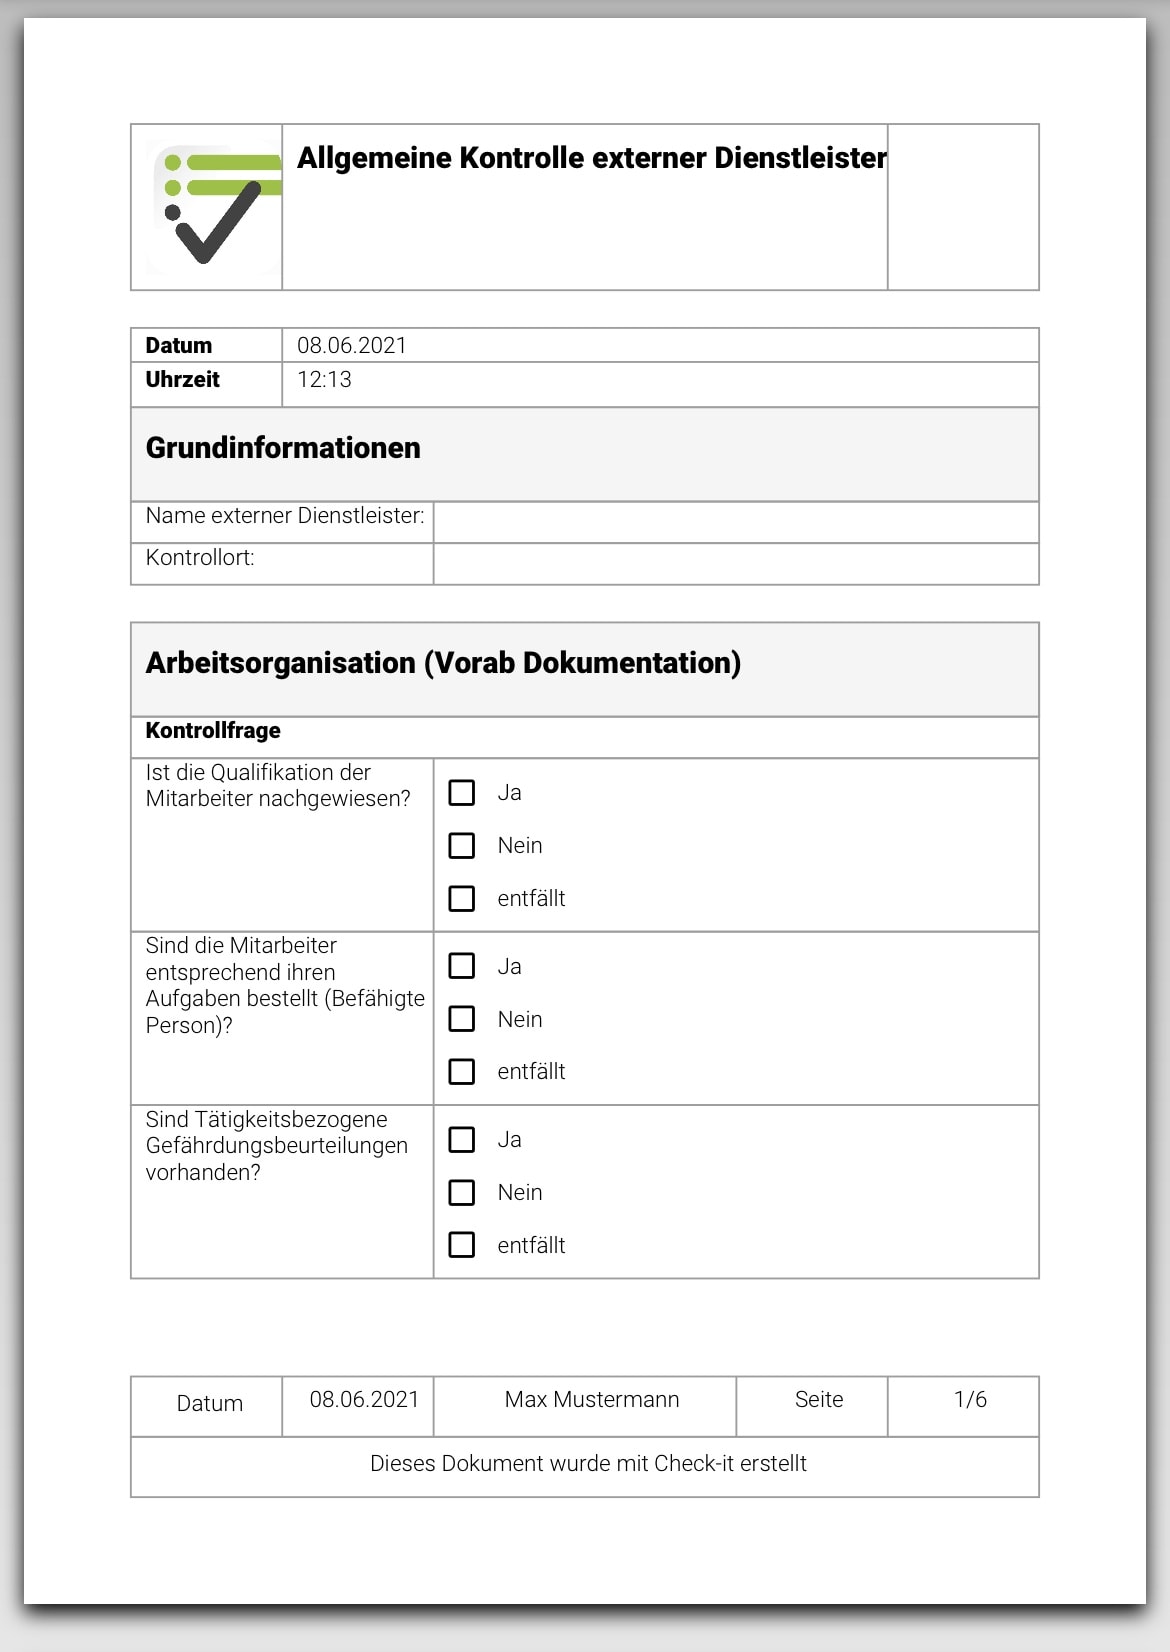 Das Bild zeigt eine PDF-Datei. Diese wird in der Check-it App generiert, wenn die Checkliste "Kontrolle von externen Dienstleistern" ausgefüllt wird.